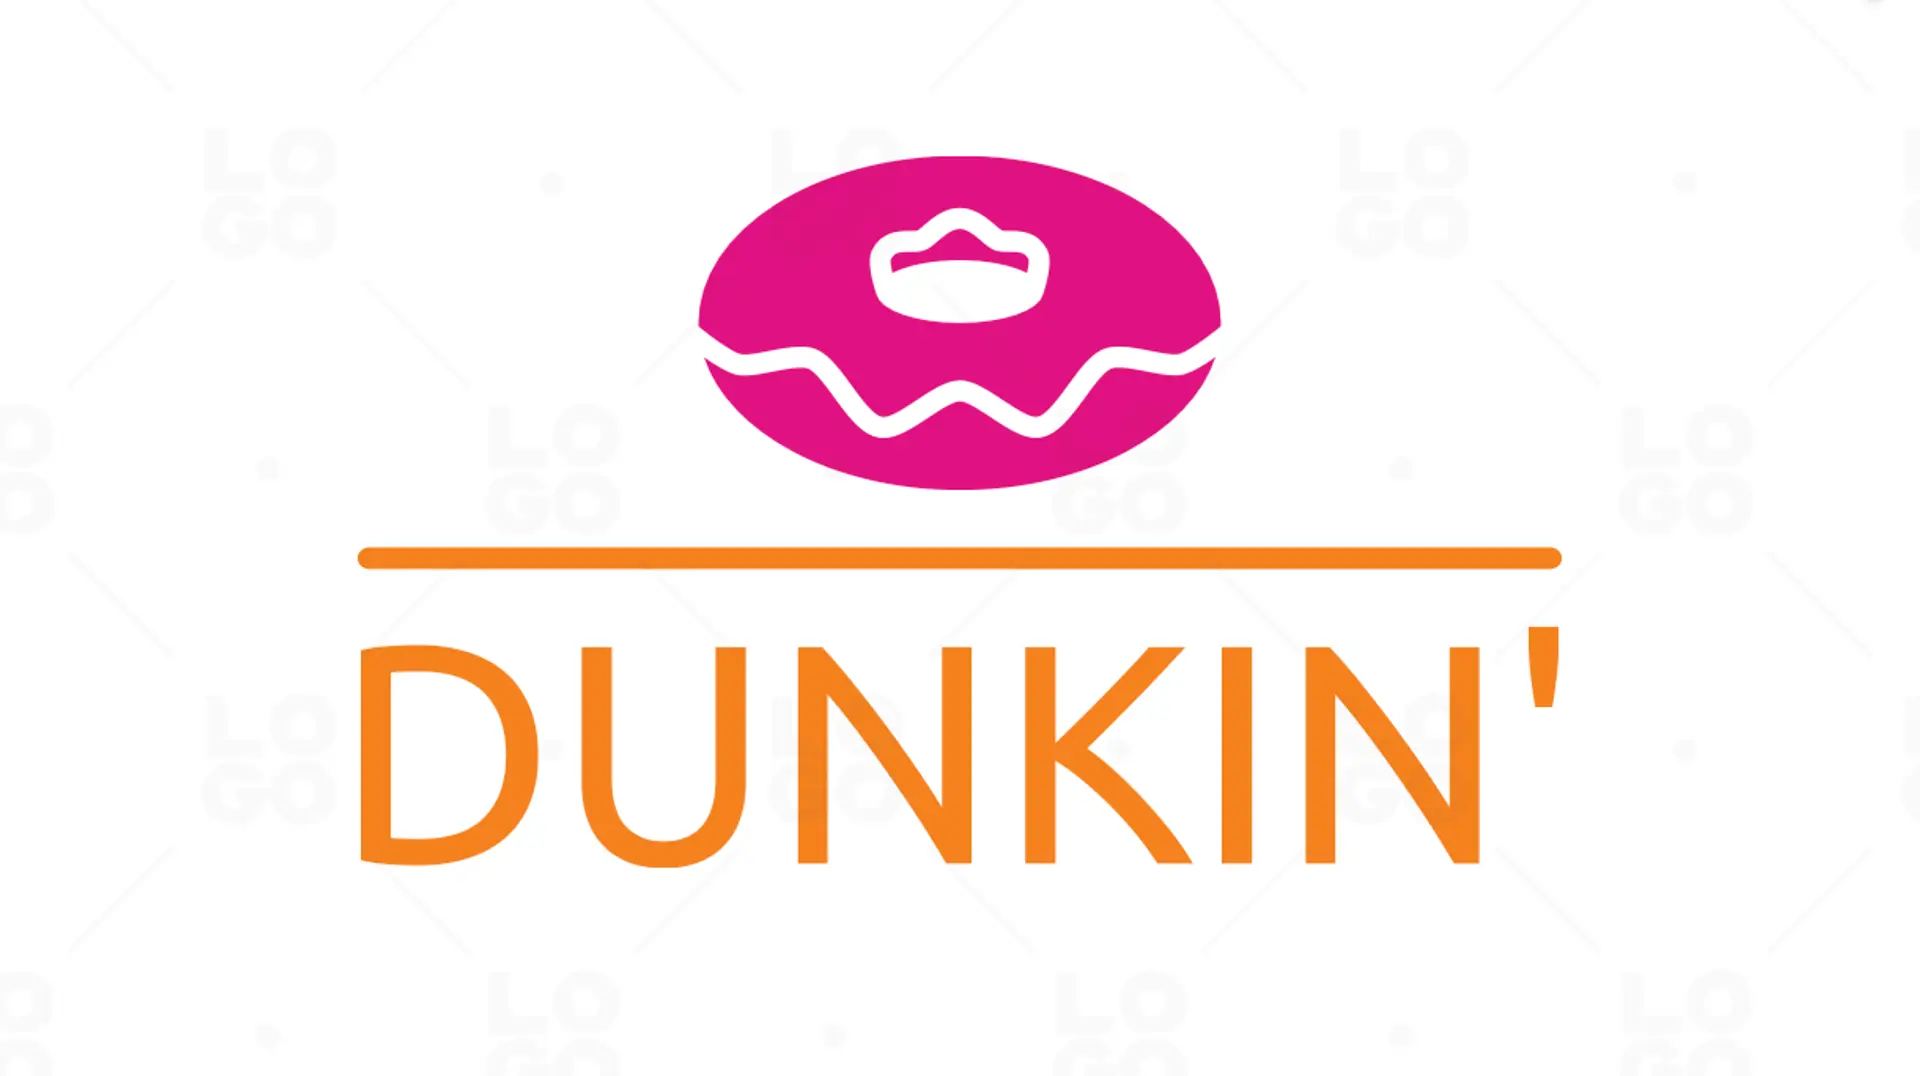 Dunkin logo variation